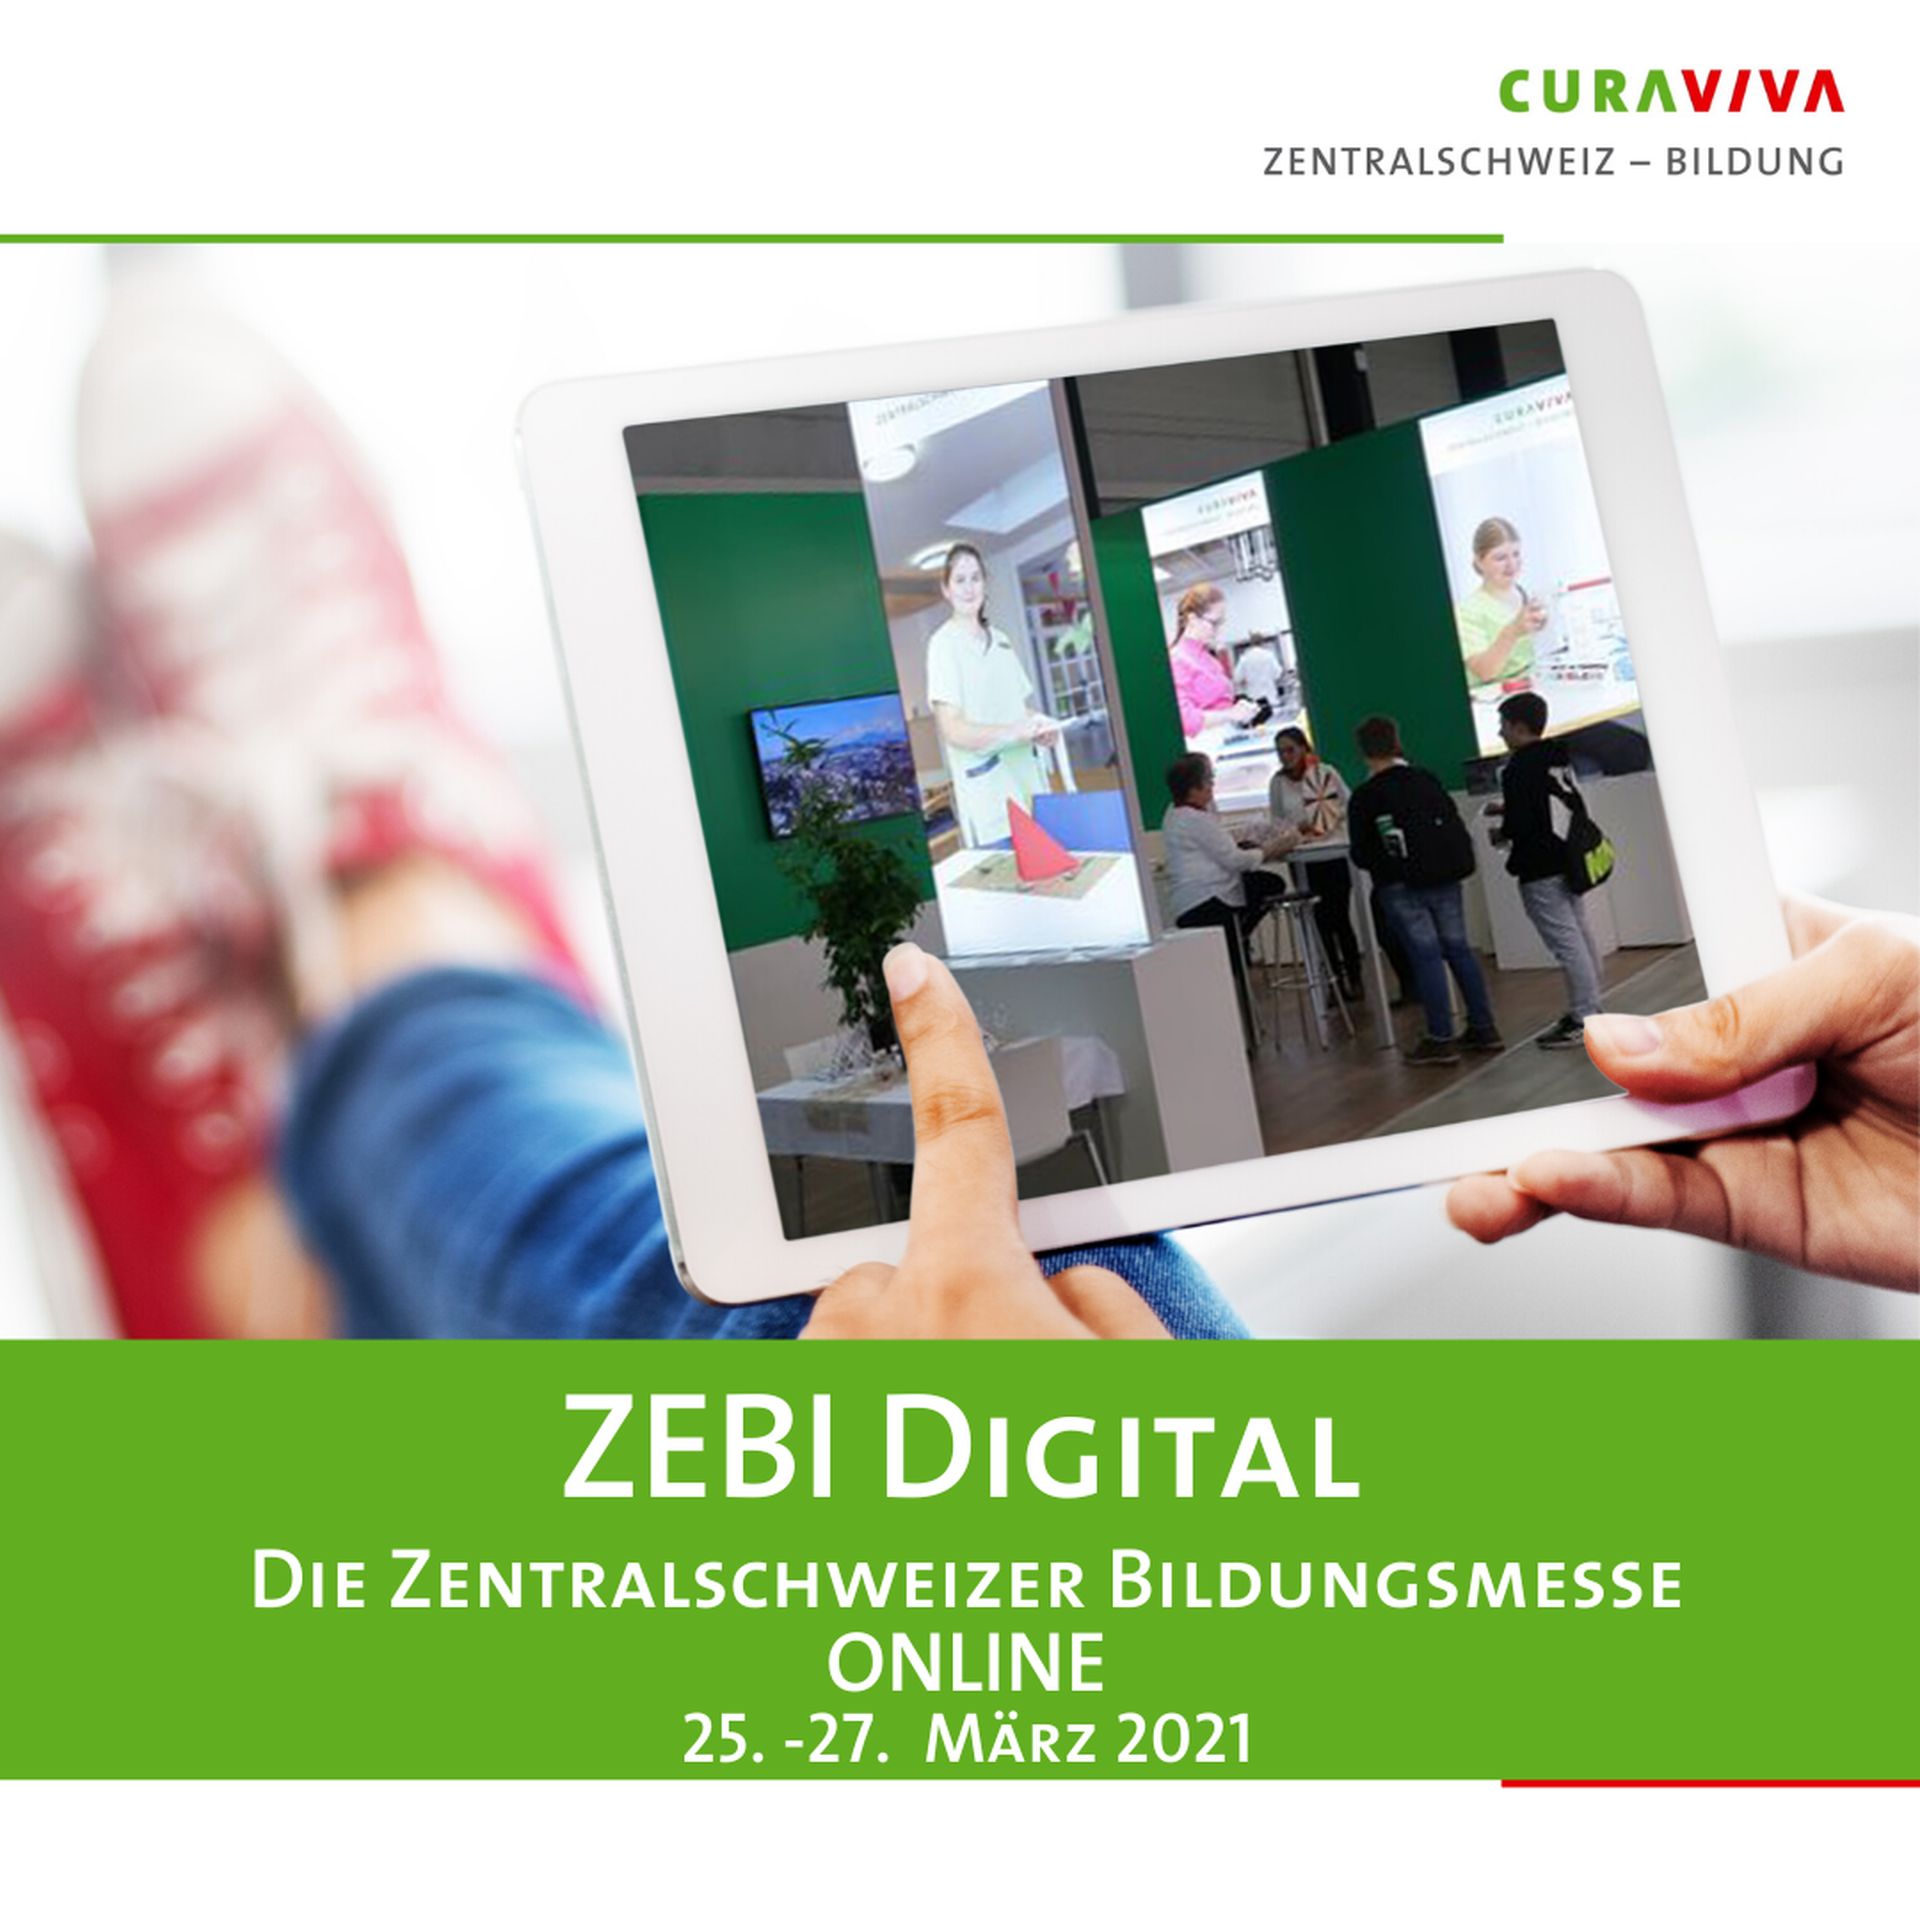 CURAVIVA Zentralschweiz – Bildung | Veranstaltungen | ZEBI digital